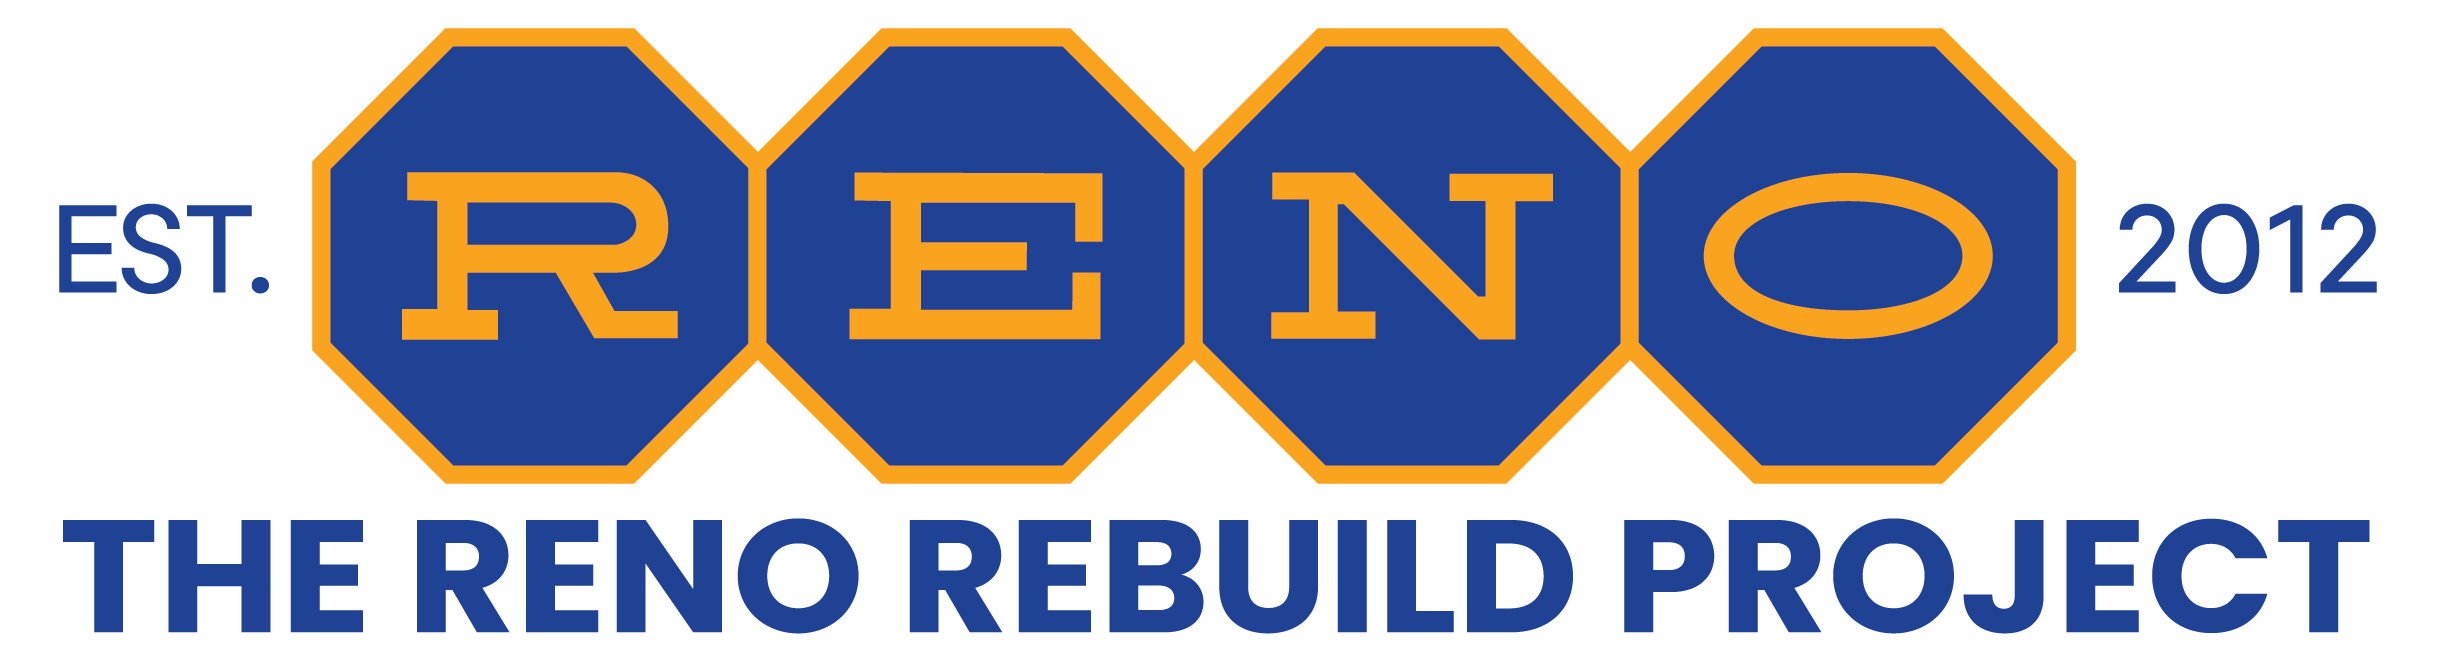 The RENO Rebuild Project